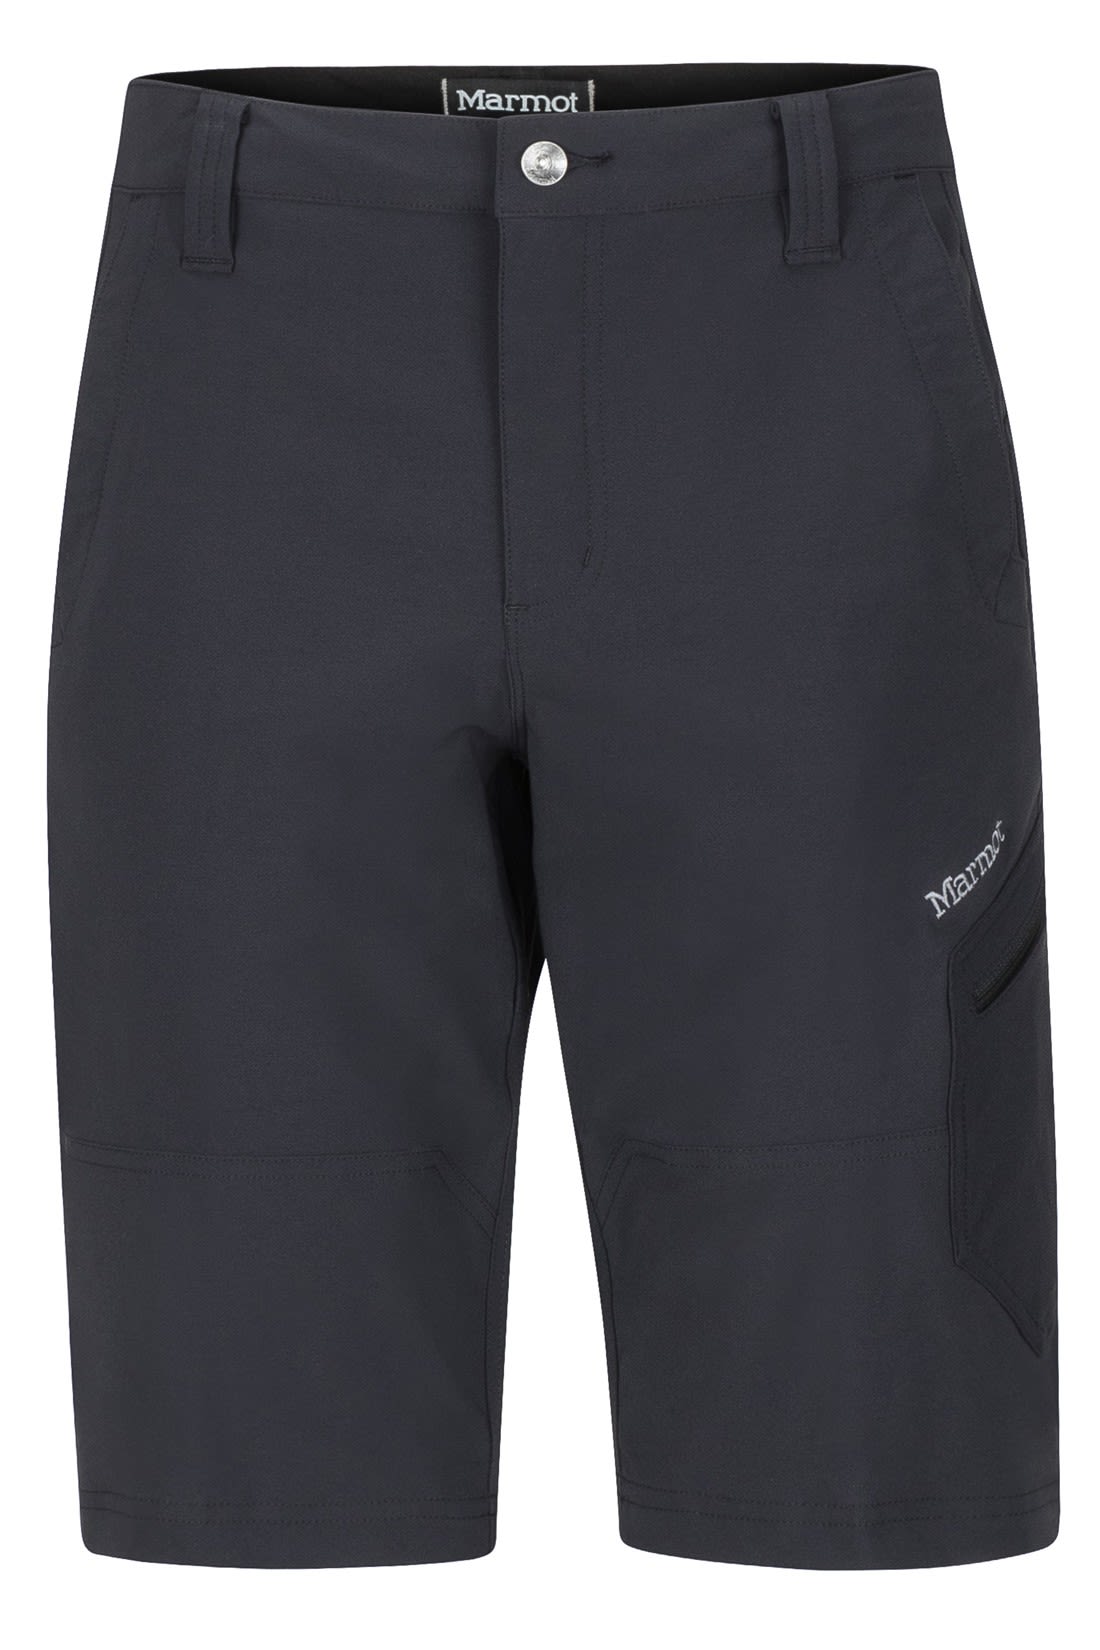 Marmot Limantour Short Schwarz- Male Shorts- Grsse 40 - Farbe Black